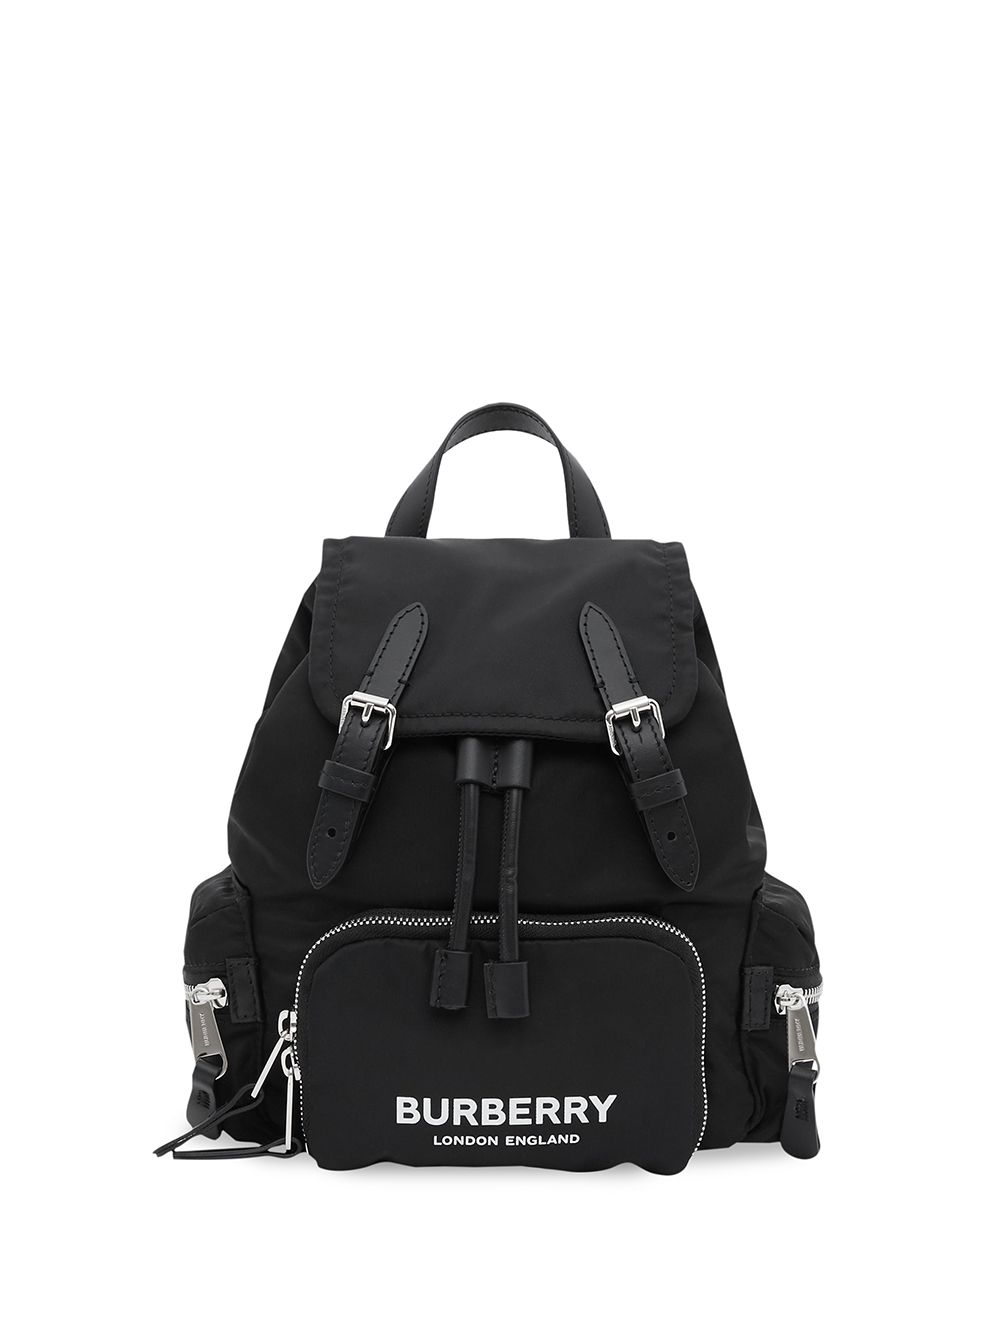 фото Burberry маленький рюкзак с логотипом